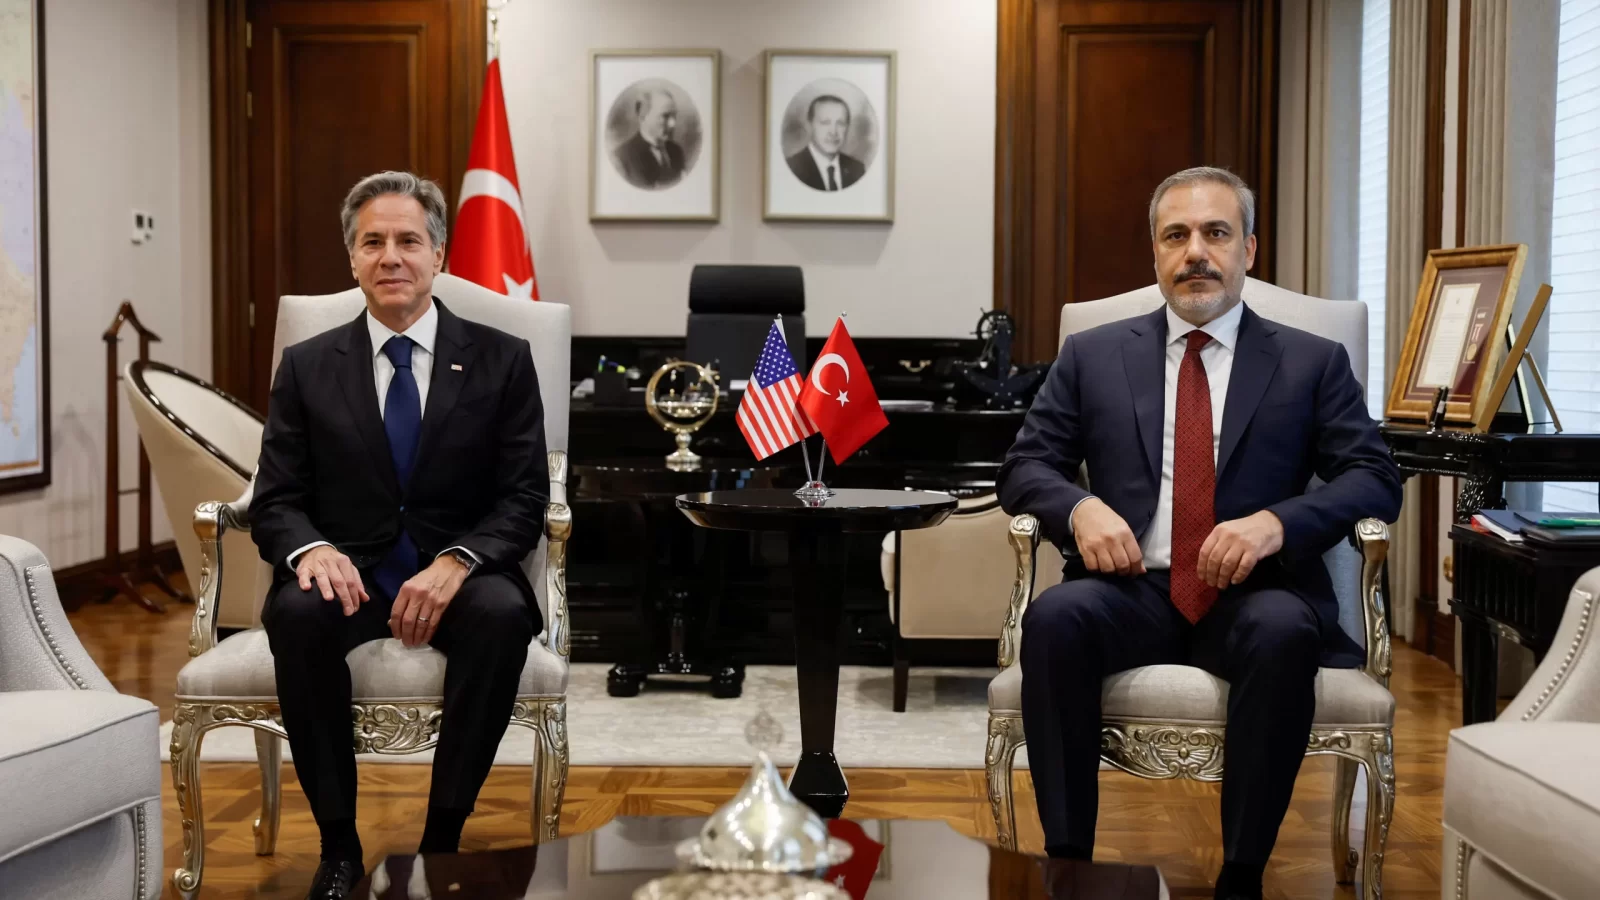 صحيفة تركية تكشف: لهذا السبب لماذا رفض وزير خارجية تركيا معانقة بلينكن؟